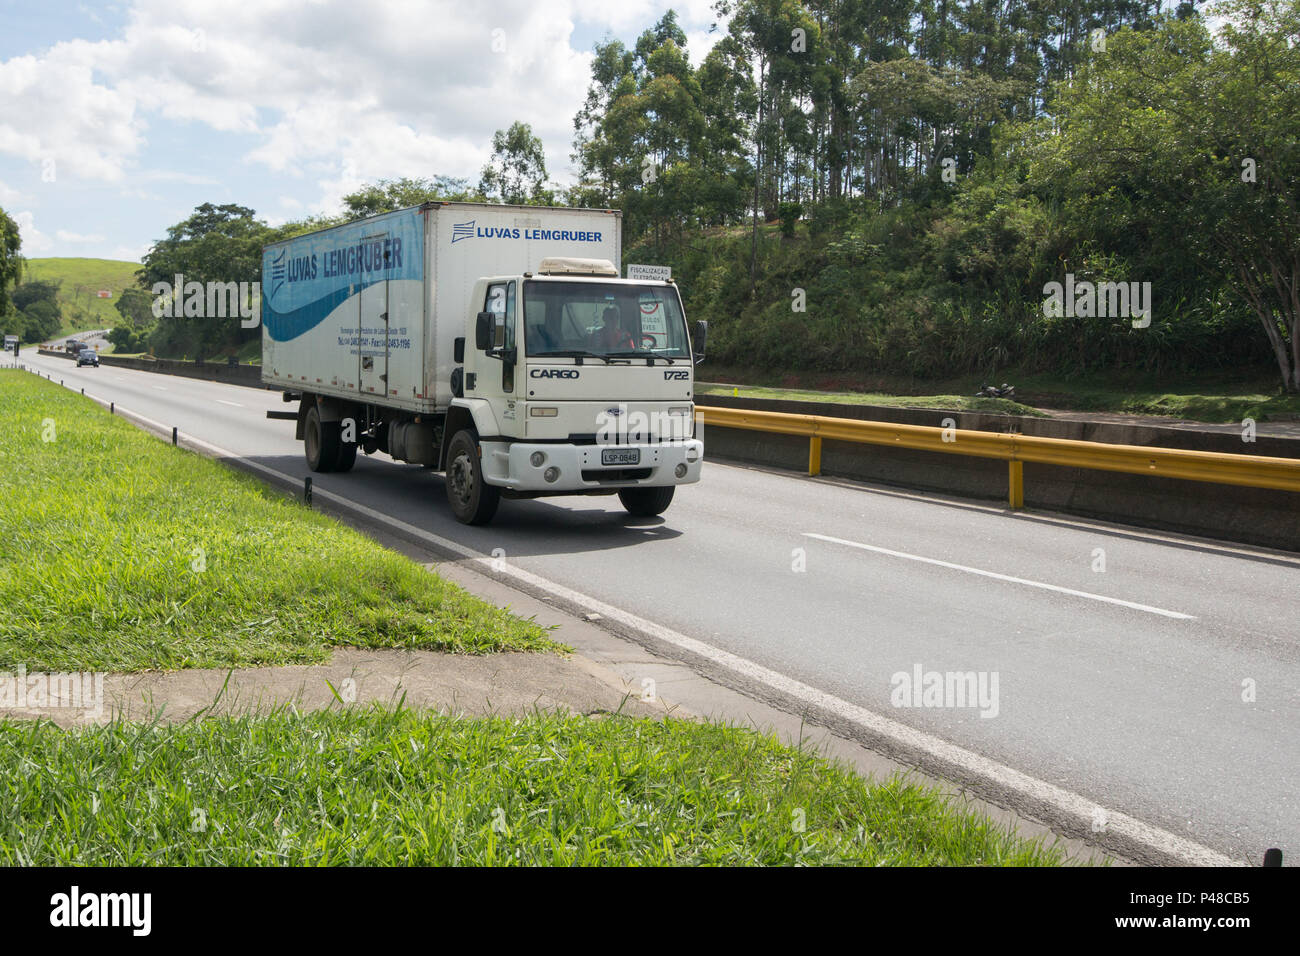 VOLTA REDONDA/RJ, BRASIL - 09/04/2015 - Caminhão Bau na Rodovia Presidente  Dutra próximo a cidade de Volta Redonda. Foto: Celso Pupo / Fotoarena Stock  Photo - Alamy